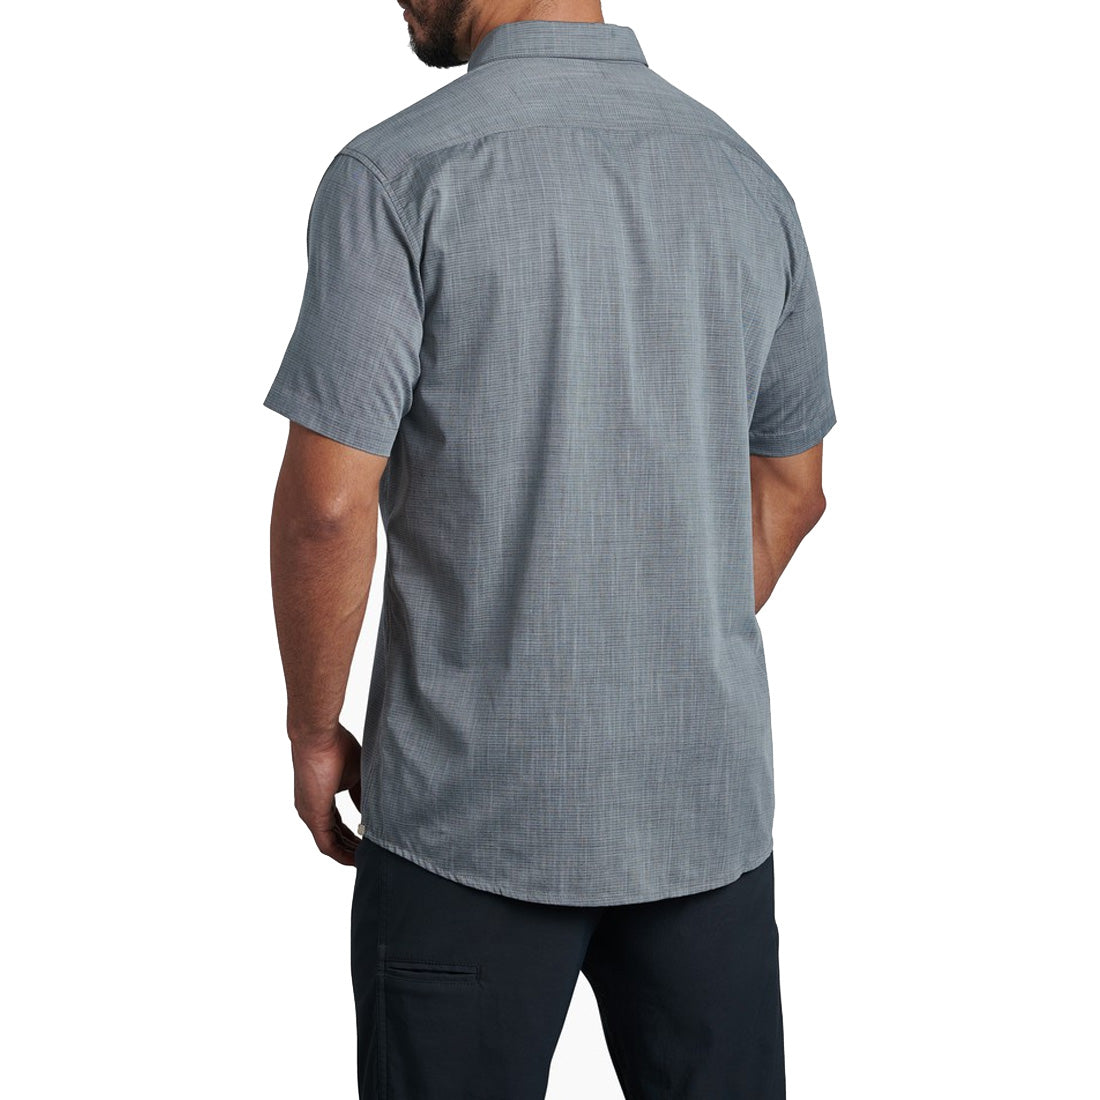 KUHL Karib Stripe Shirt - Men's